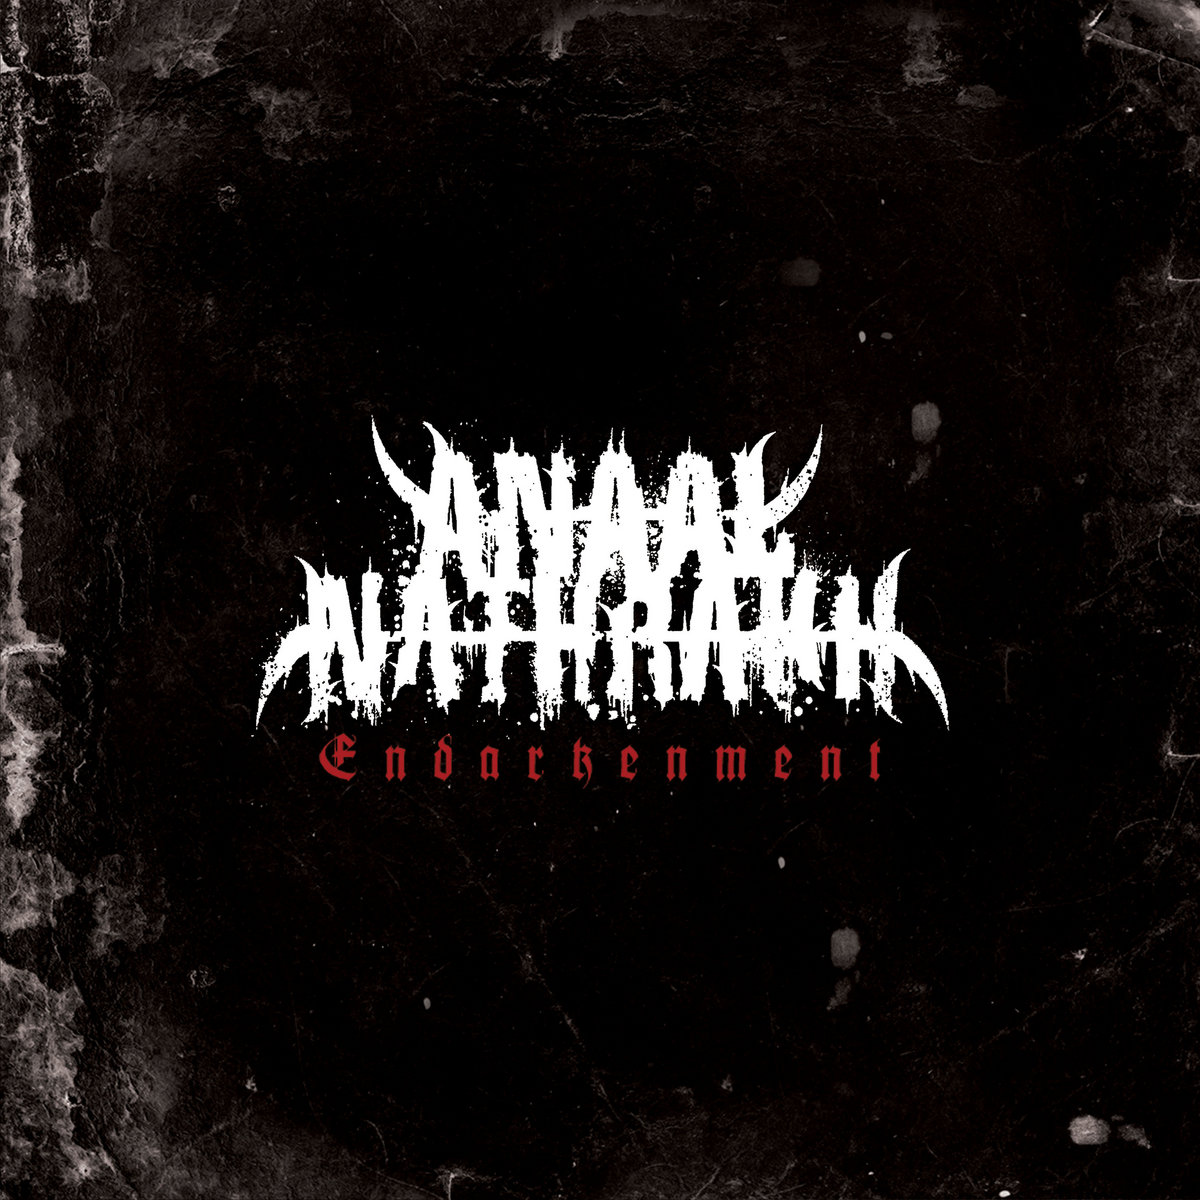 ANAAL NATHRAKH nuevo album Endarkenment para octubre